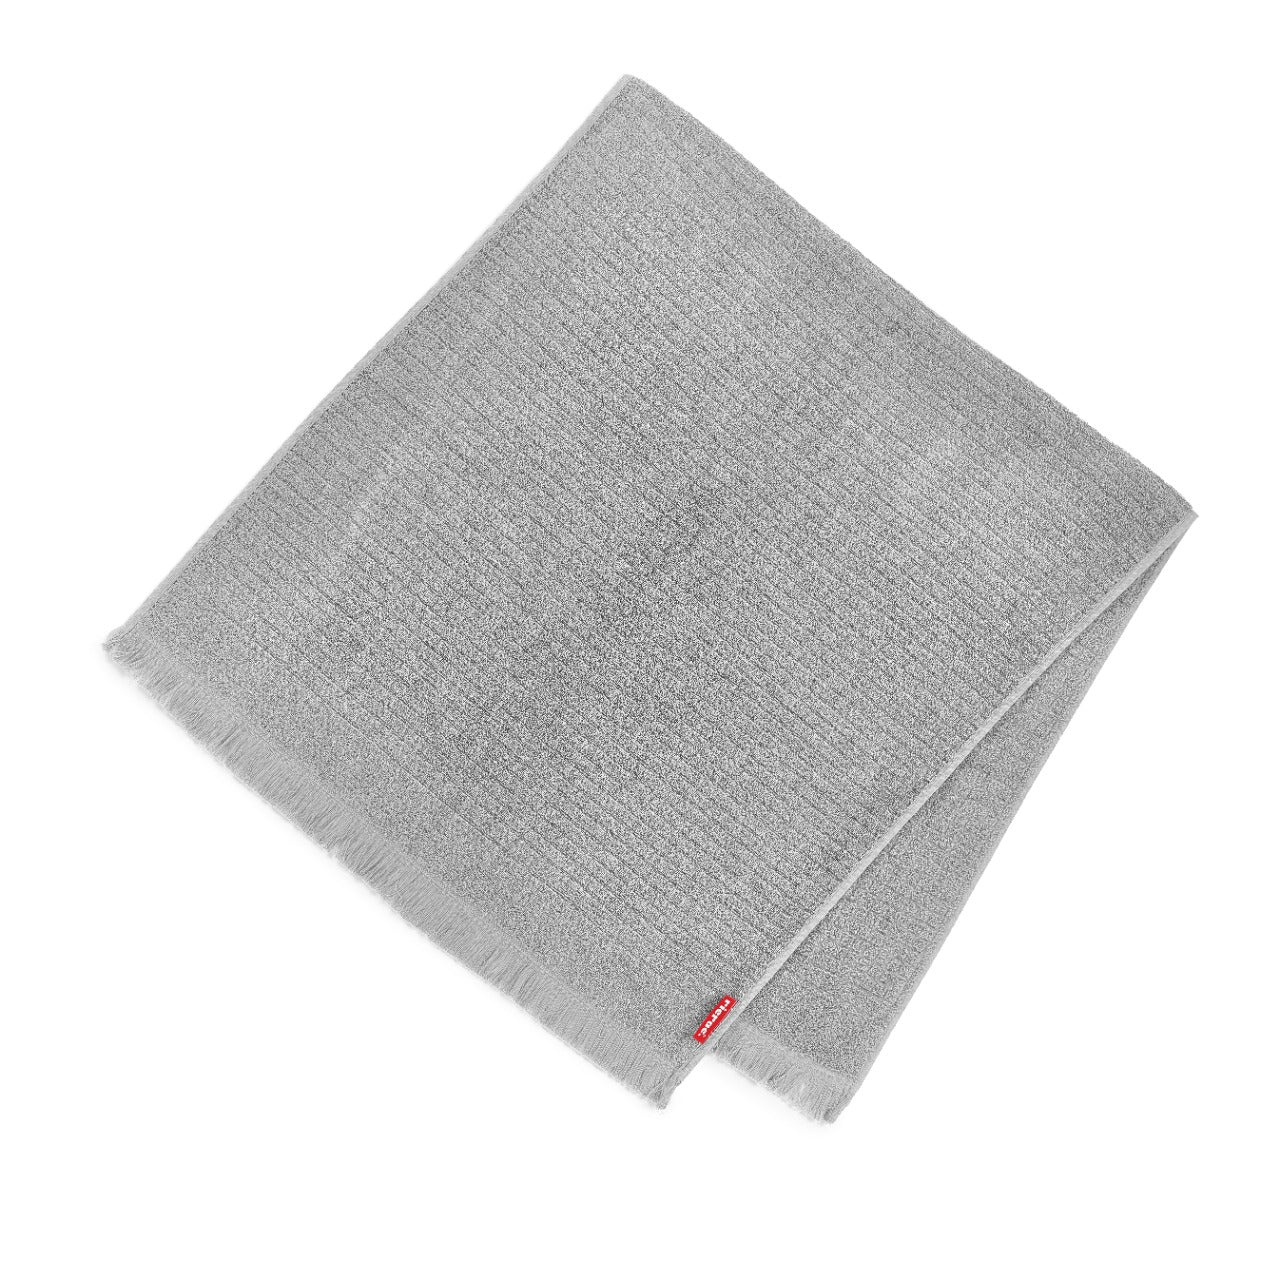 Rolette- Square Patterns Towel